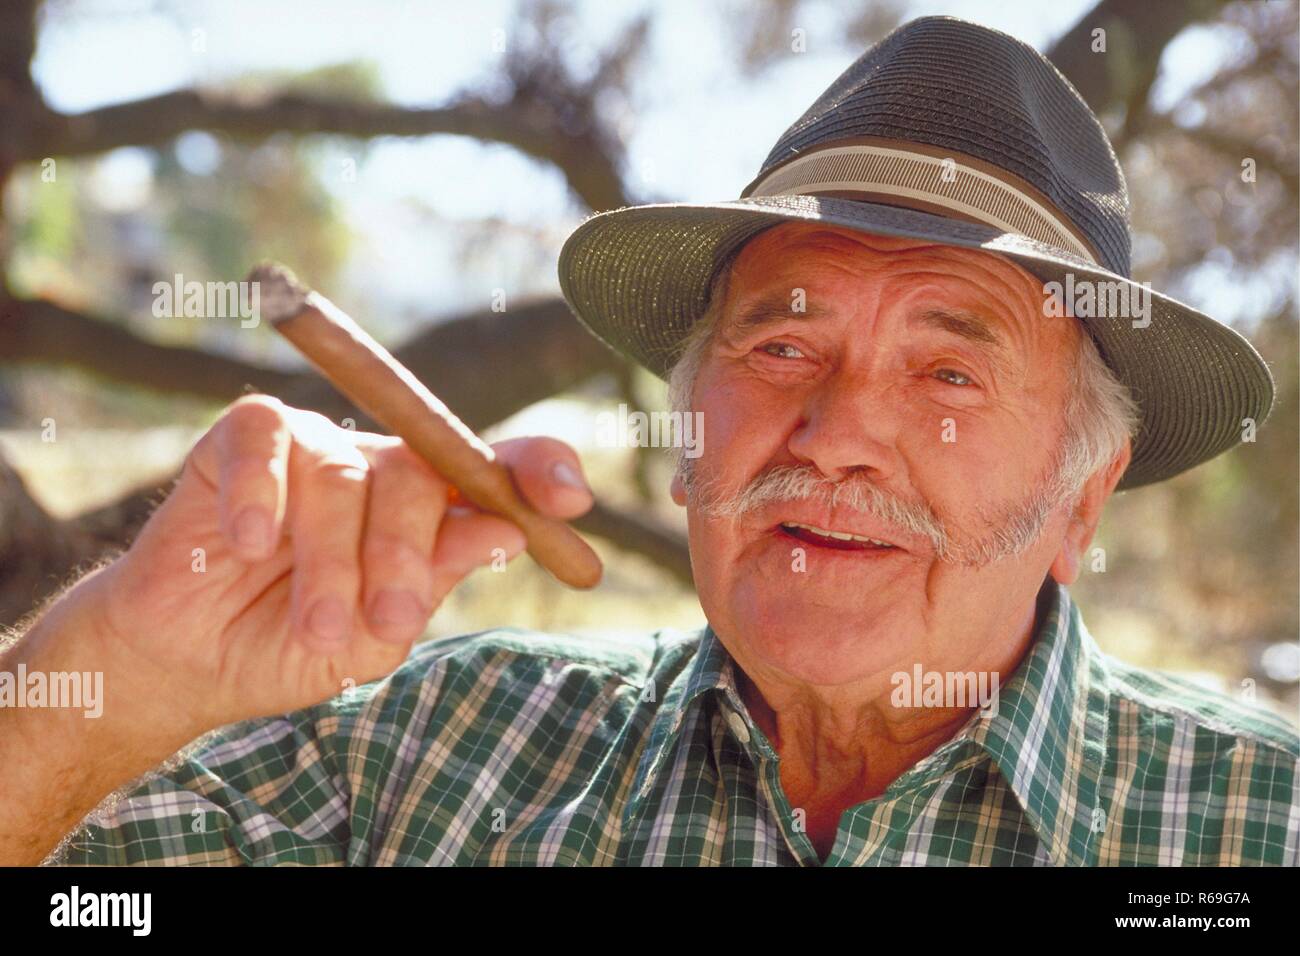 Ritratto, all'aperto, Mann mit Oberlippenbart, ca. 65 Jahre alt, bekleidet mit gruen-weiss kariertem Hemd und Hut mit einer Zigarre in der mano unter einem Baum Foto Stock